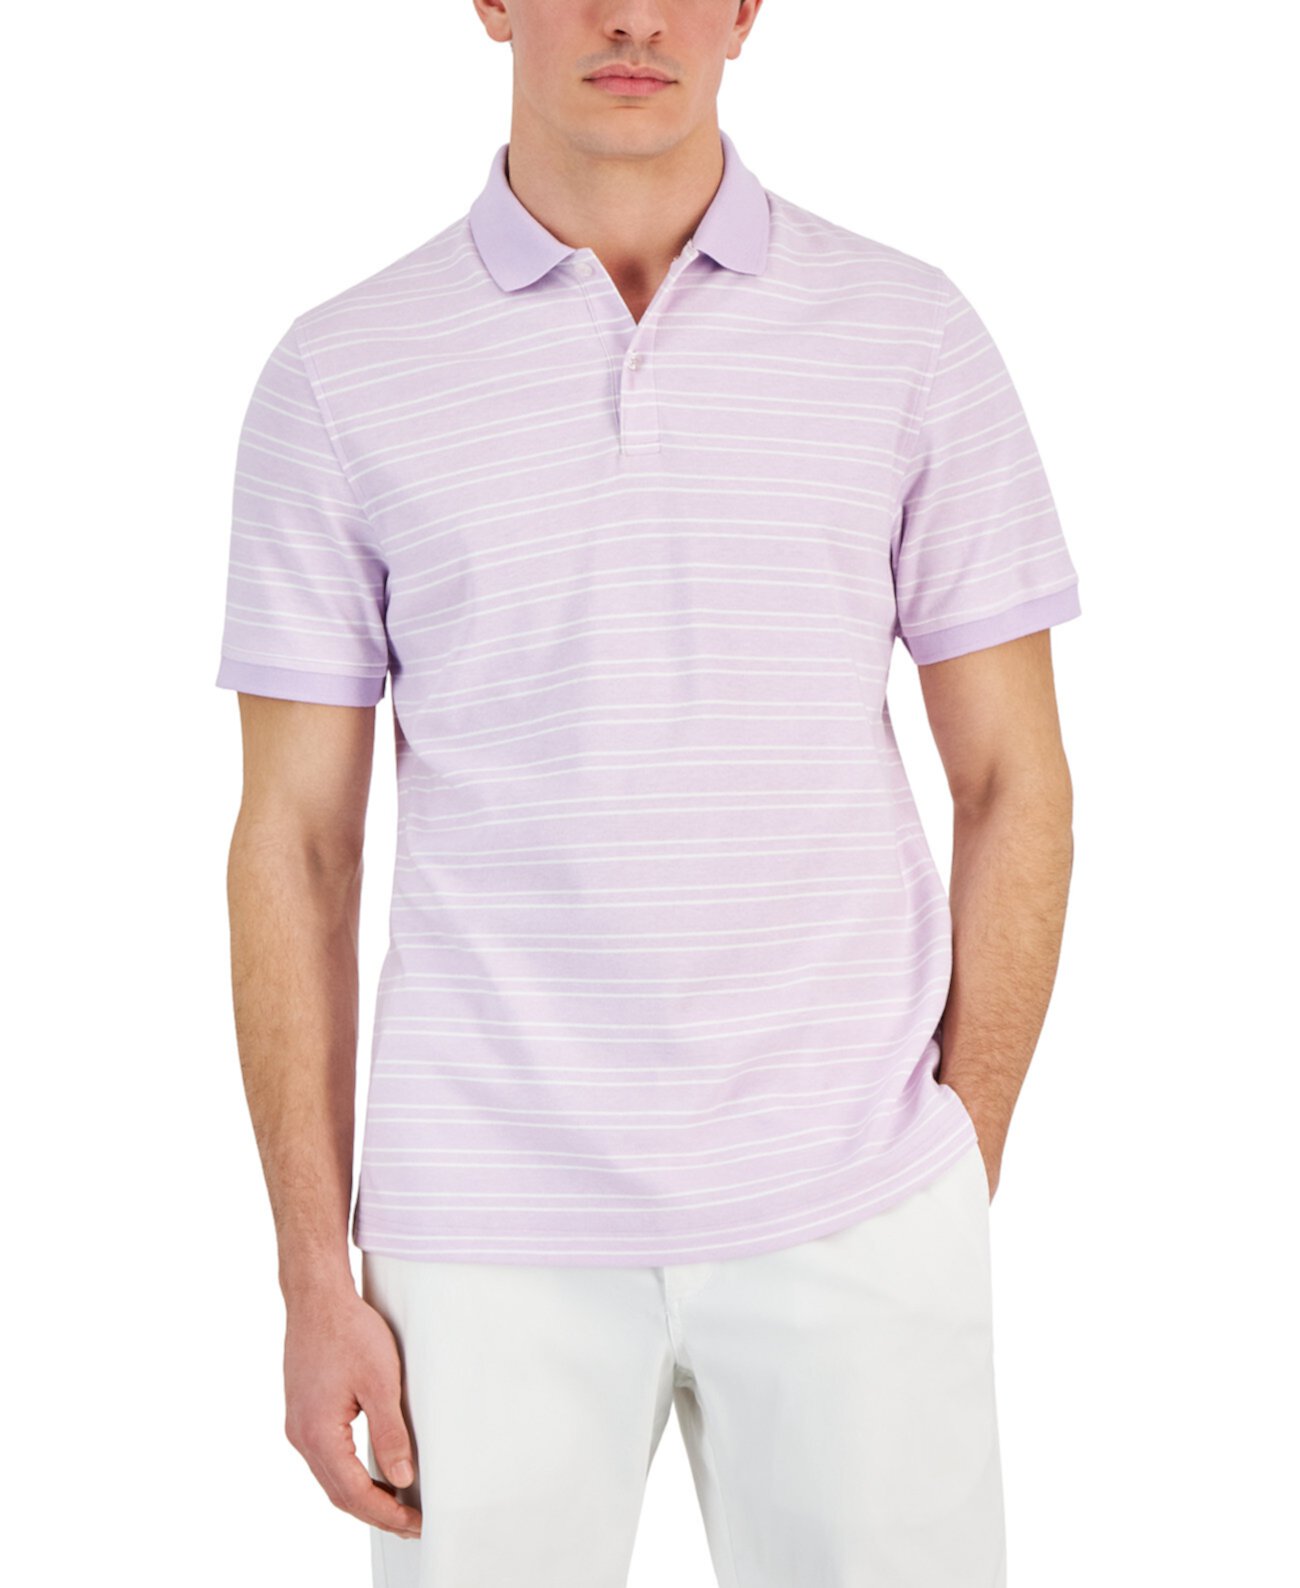 Мужская рубашка-поло с короткими рукавами в полоску Carter, созданная для Macy's Club Room